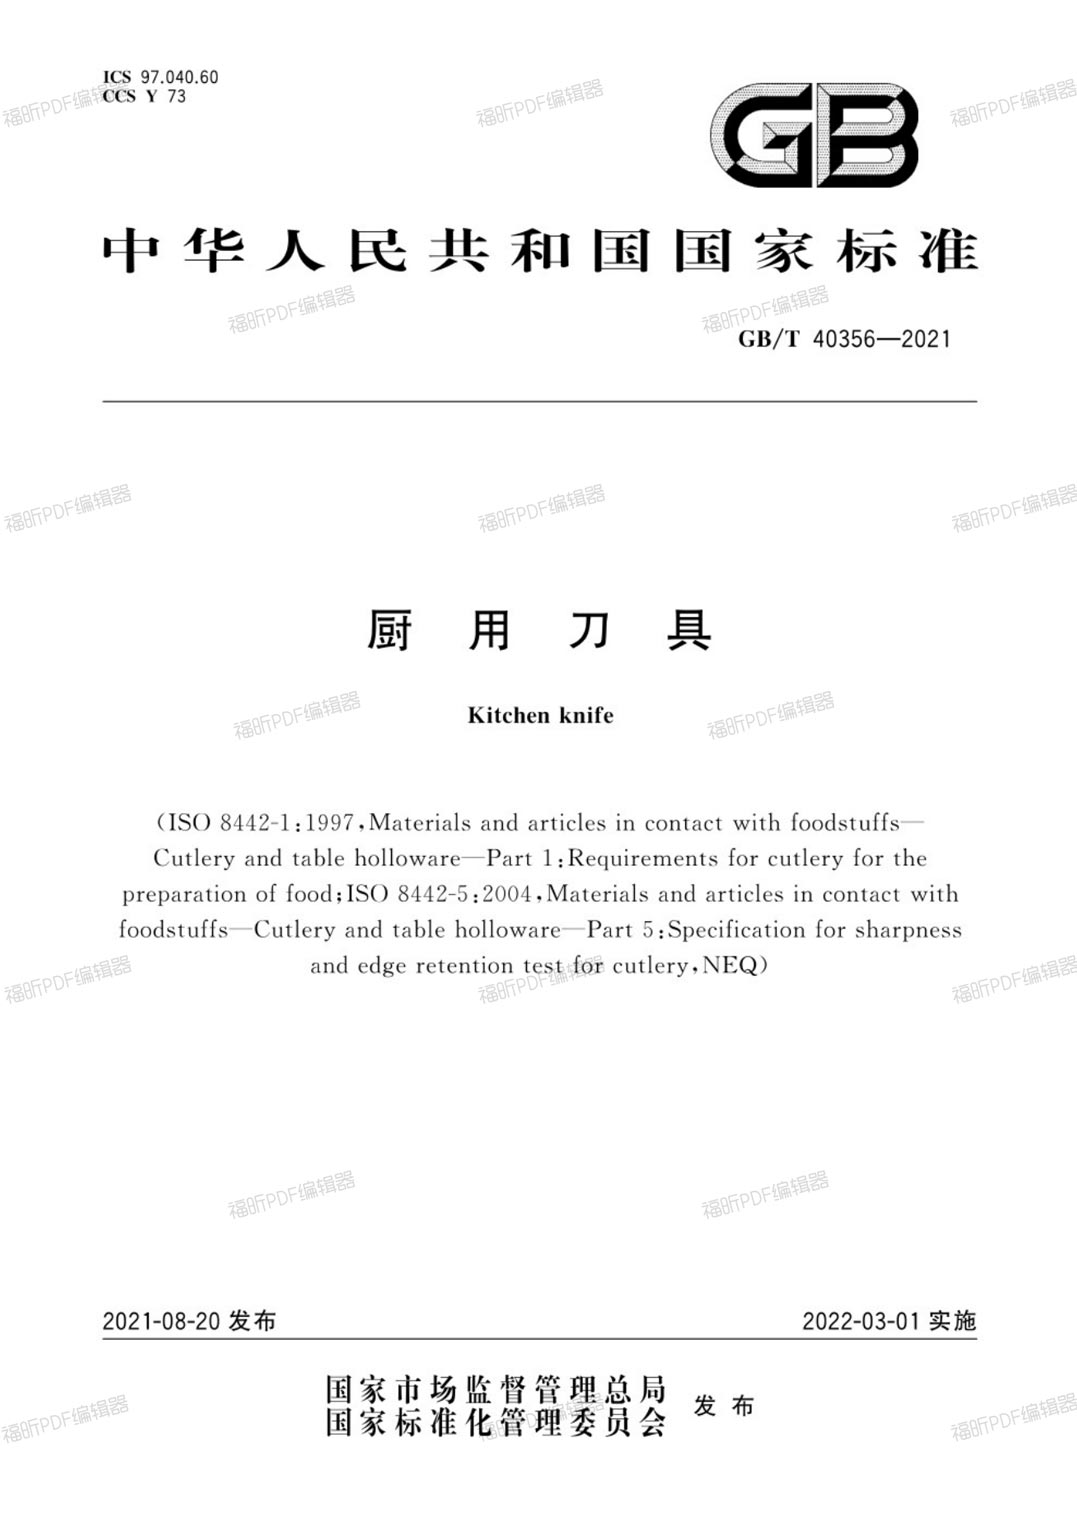 王麻子公司受邀成为“中国厨用刀具国家标准”起草单位.jpg